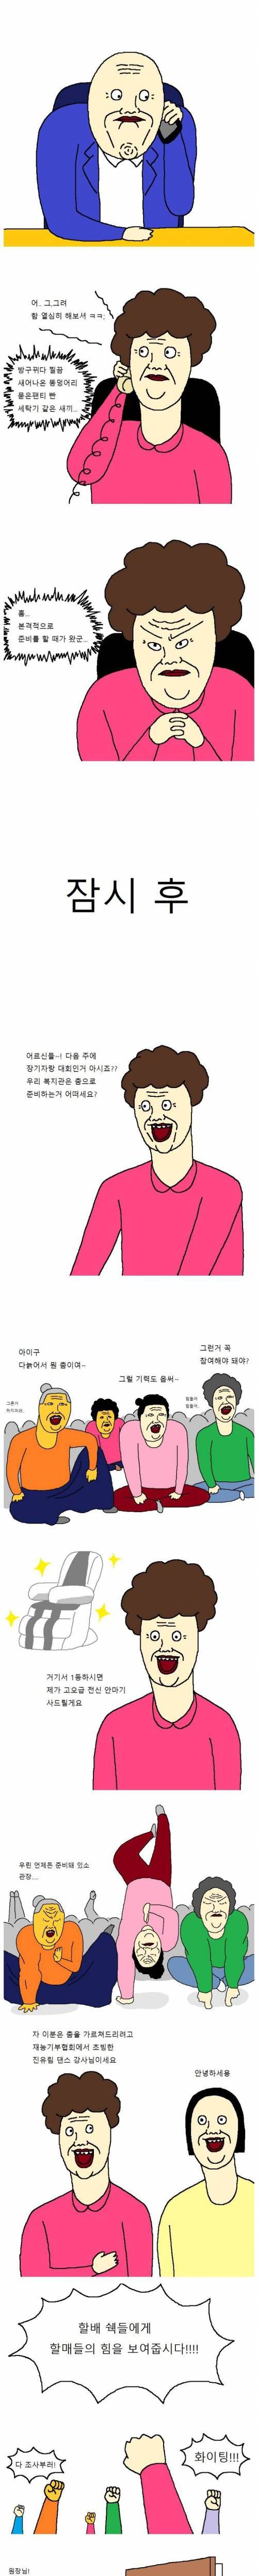 할머니들이 장기자랑대회 출전하는 만화.jpg